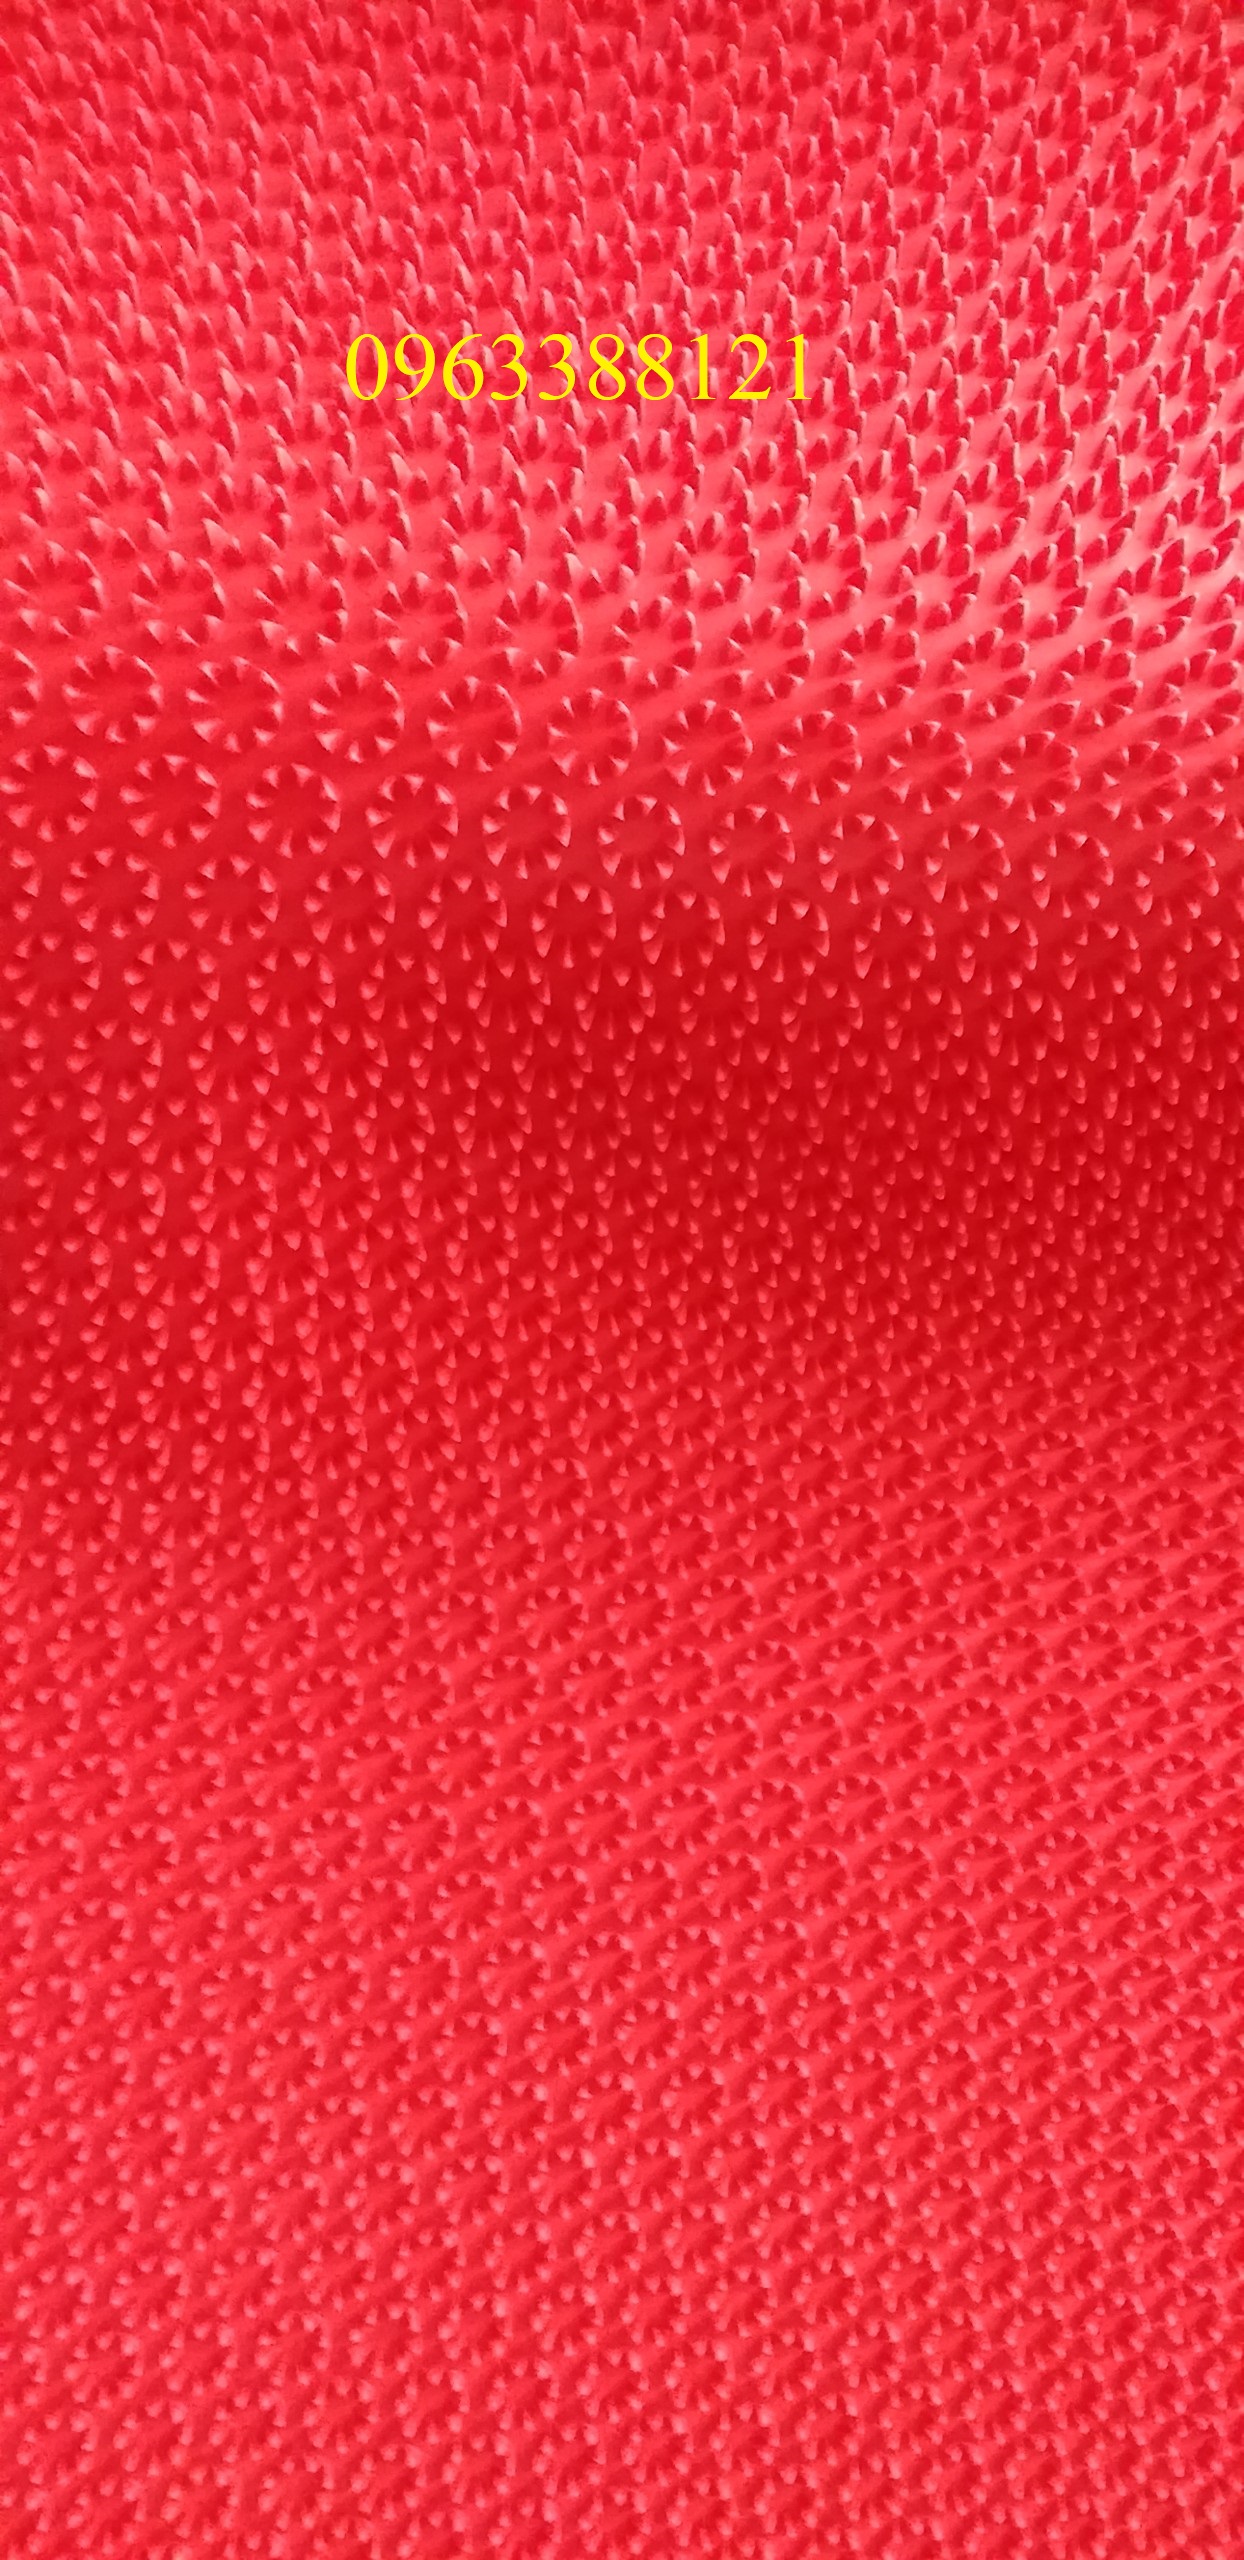 Thảm nhựa gai hoa cúc lót sàn chống trơn trượt màu đỏ